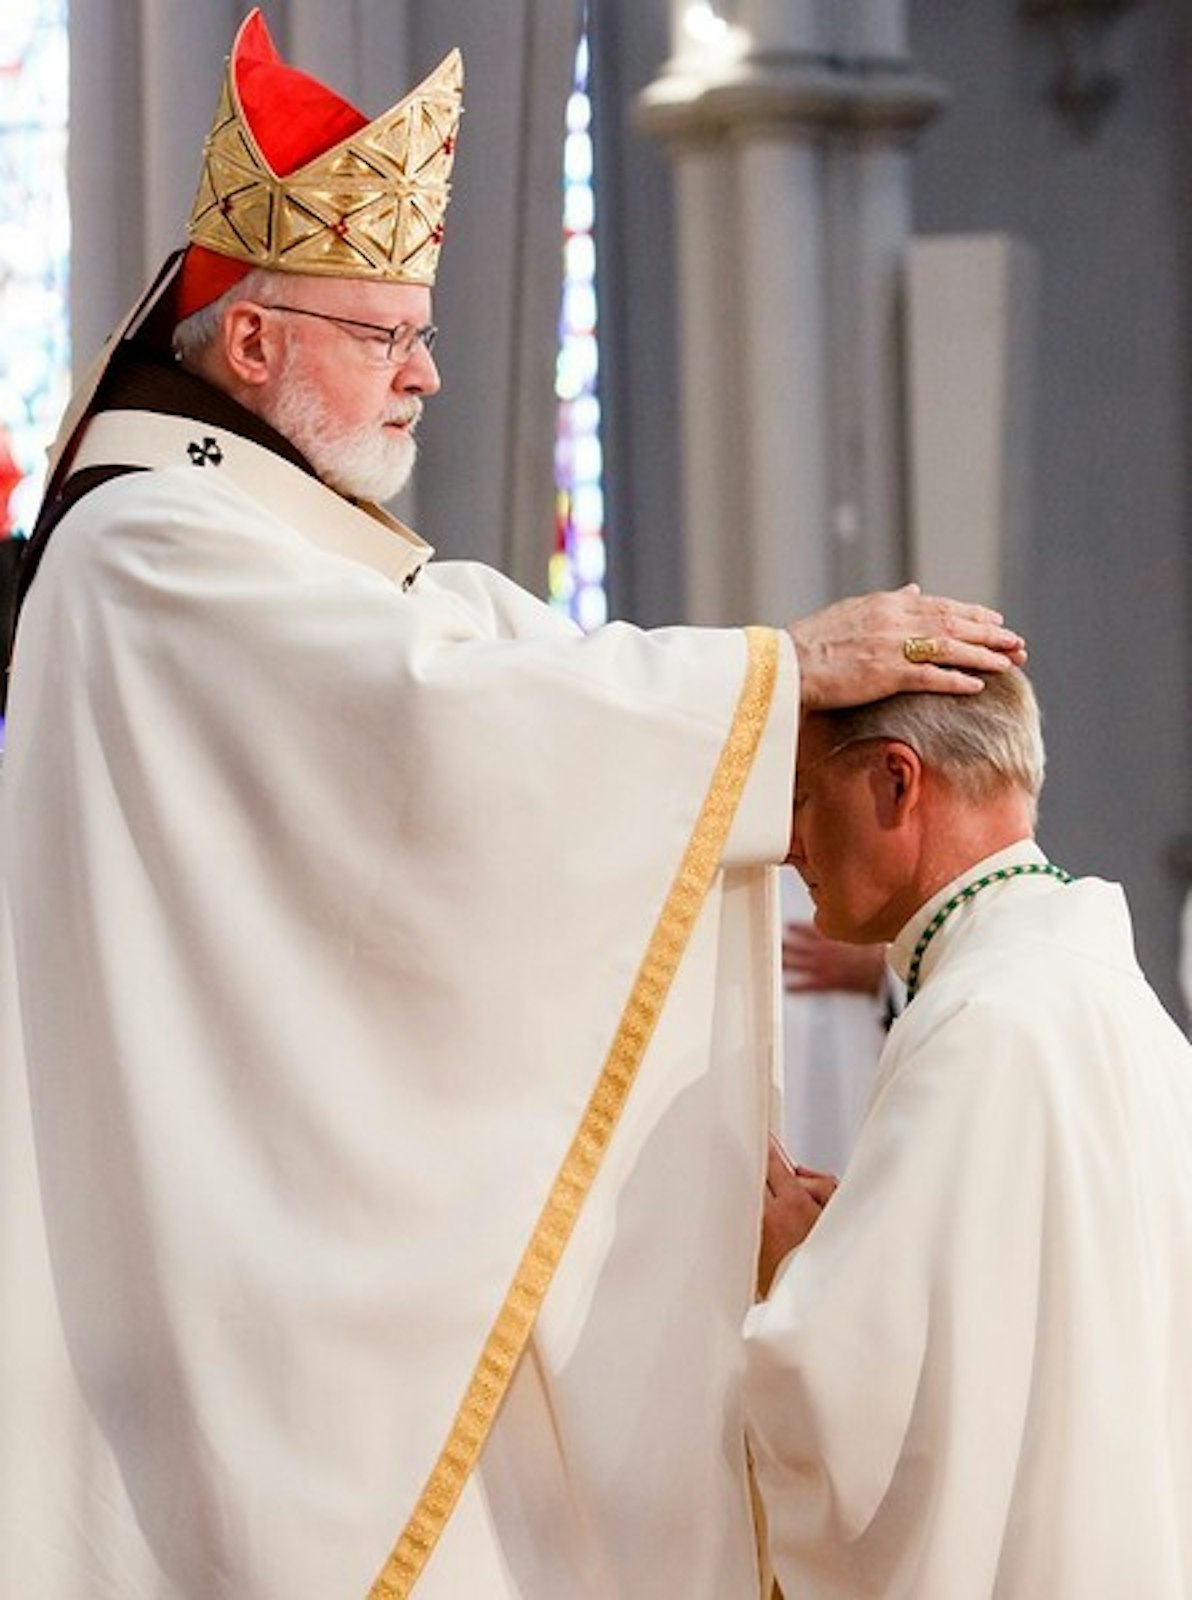 El cardenal de Boston, Sean P. O'Malley, impone las manos al Arzobispo Russell para ordenarlo al episcopado en la Catedral del Santo Nombre de Boston el 3 de junio de 2016. (Gregory L. Tracy | The Boston Pilot)